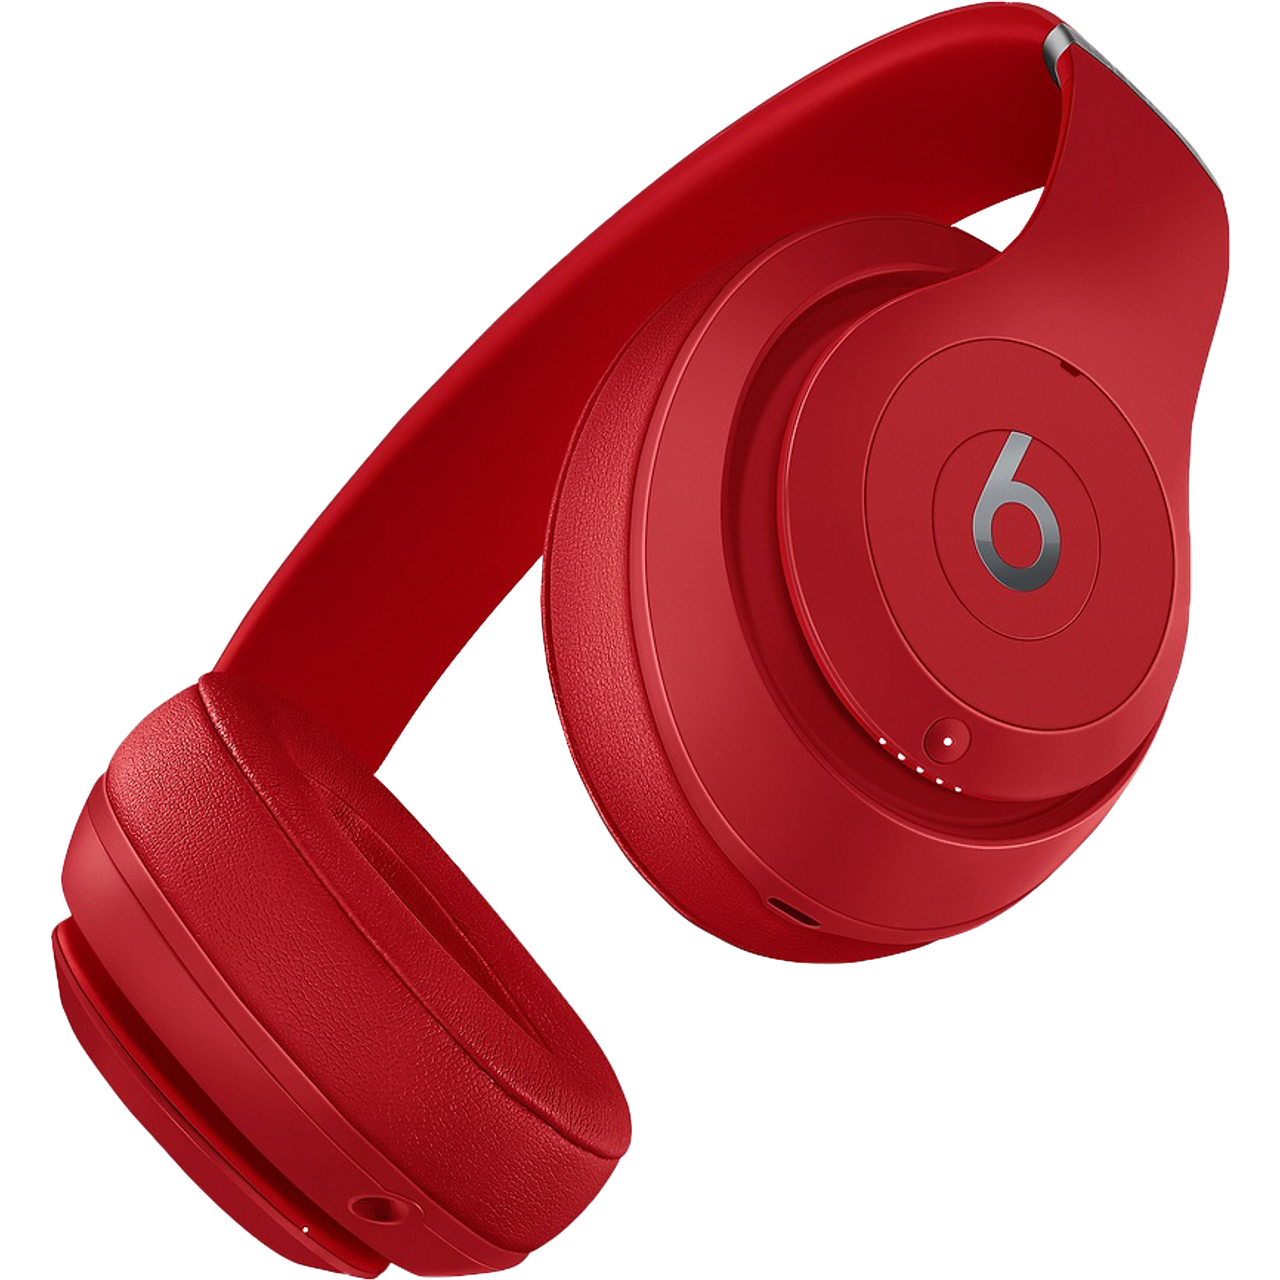 Beats Studio3 Over-Ear Wireless Headphones - Red